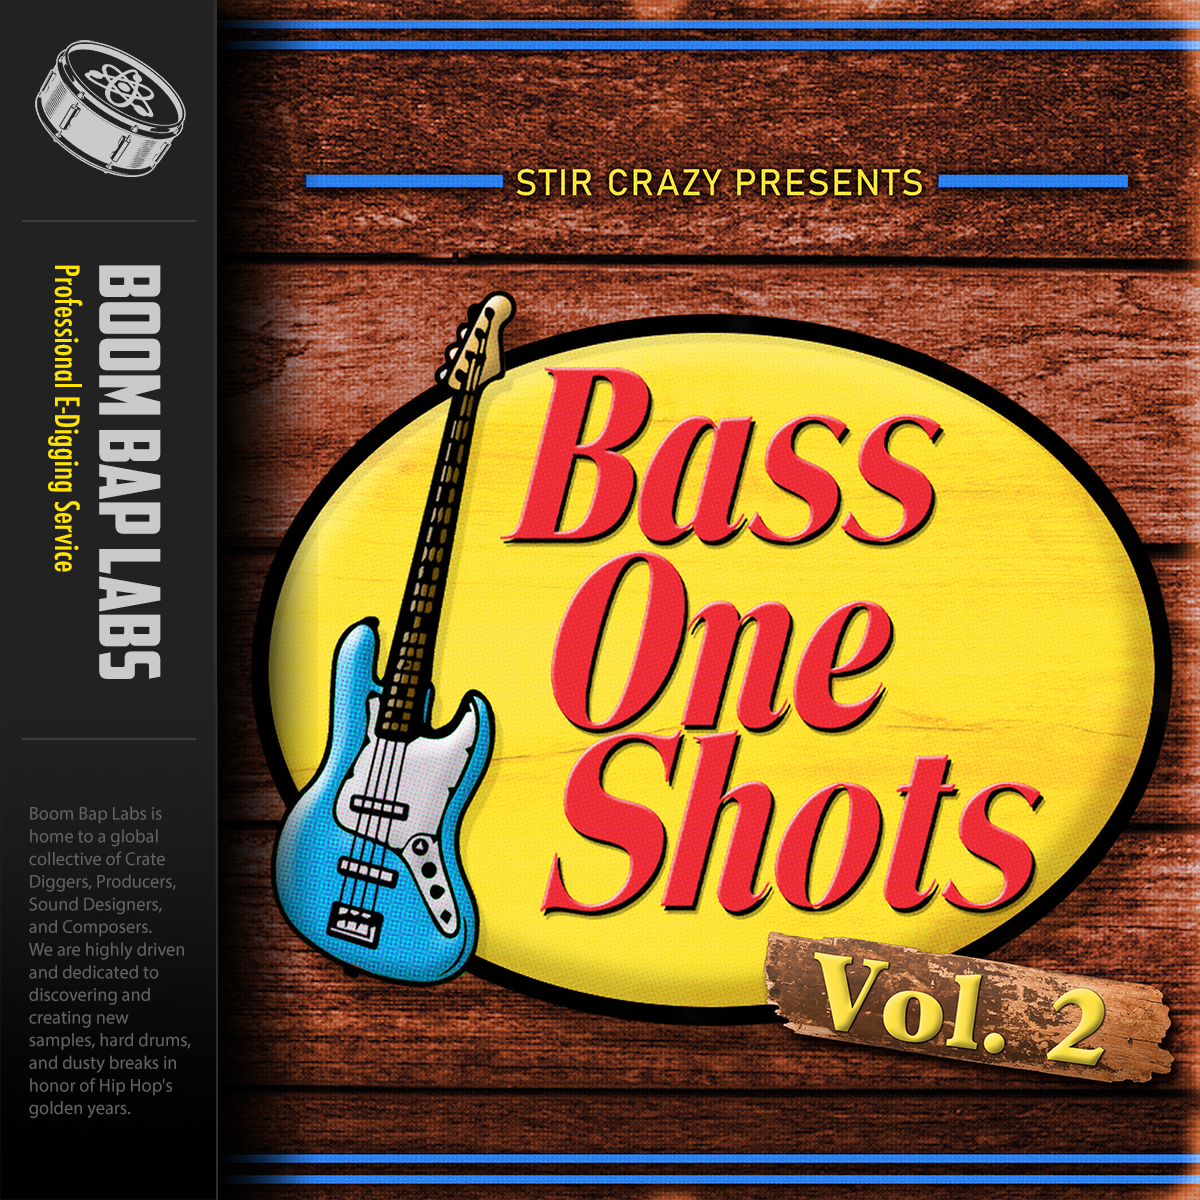 Bass One Shots Vol 2